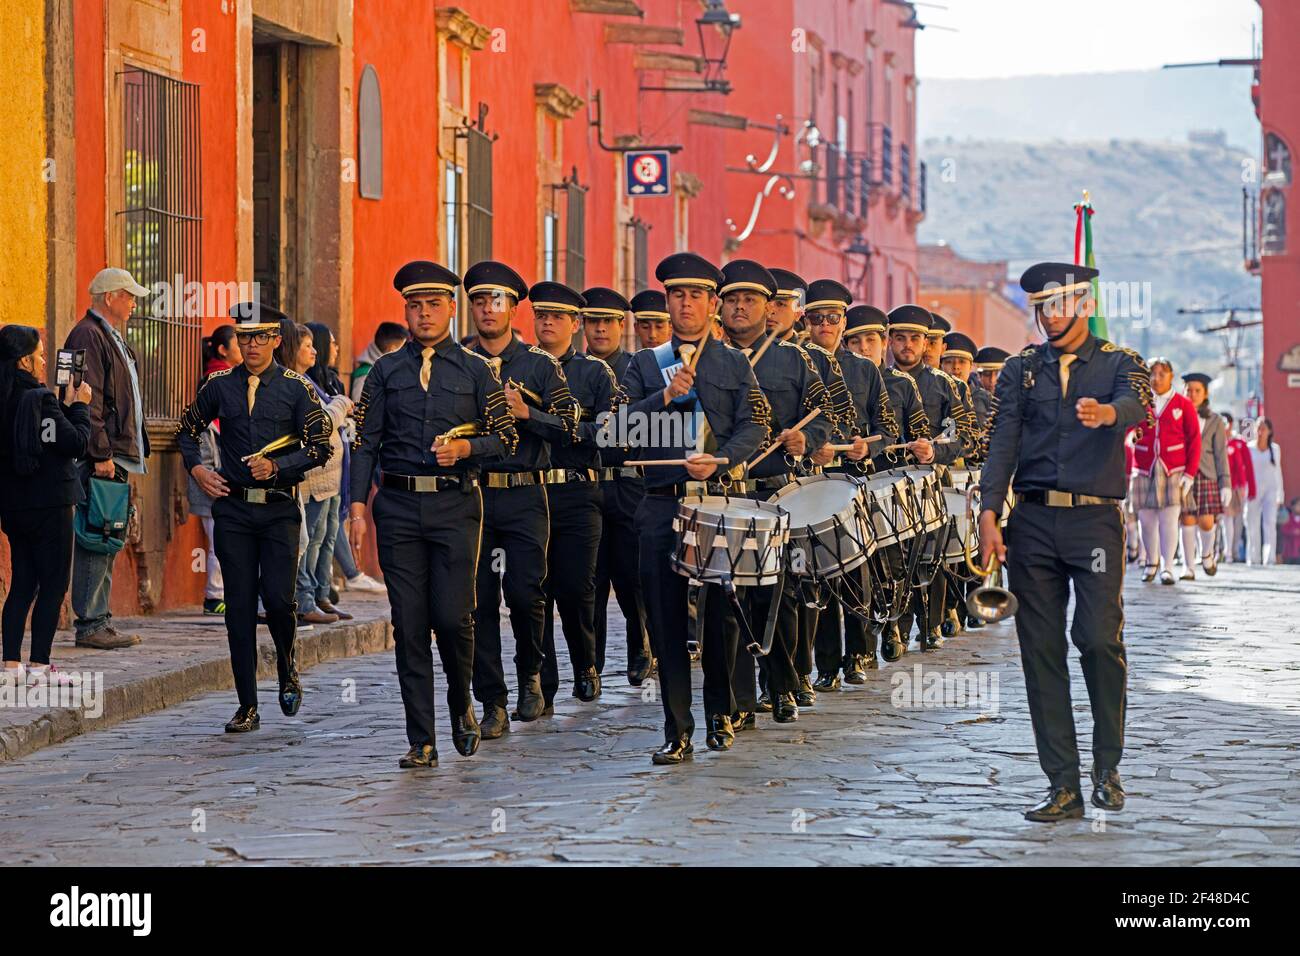 Des défilés de groupe pour la célébration de l'anniversaire du héros mexicain de l'indépendance Ignacio Allende dans la ville de San Miguel de Allende, Guanajuato, Mexique Banque D'Images